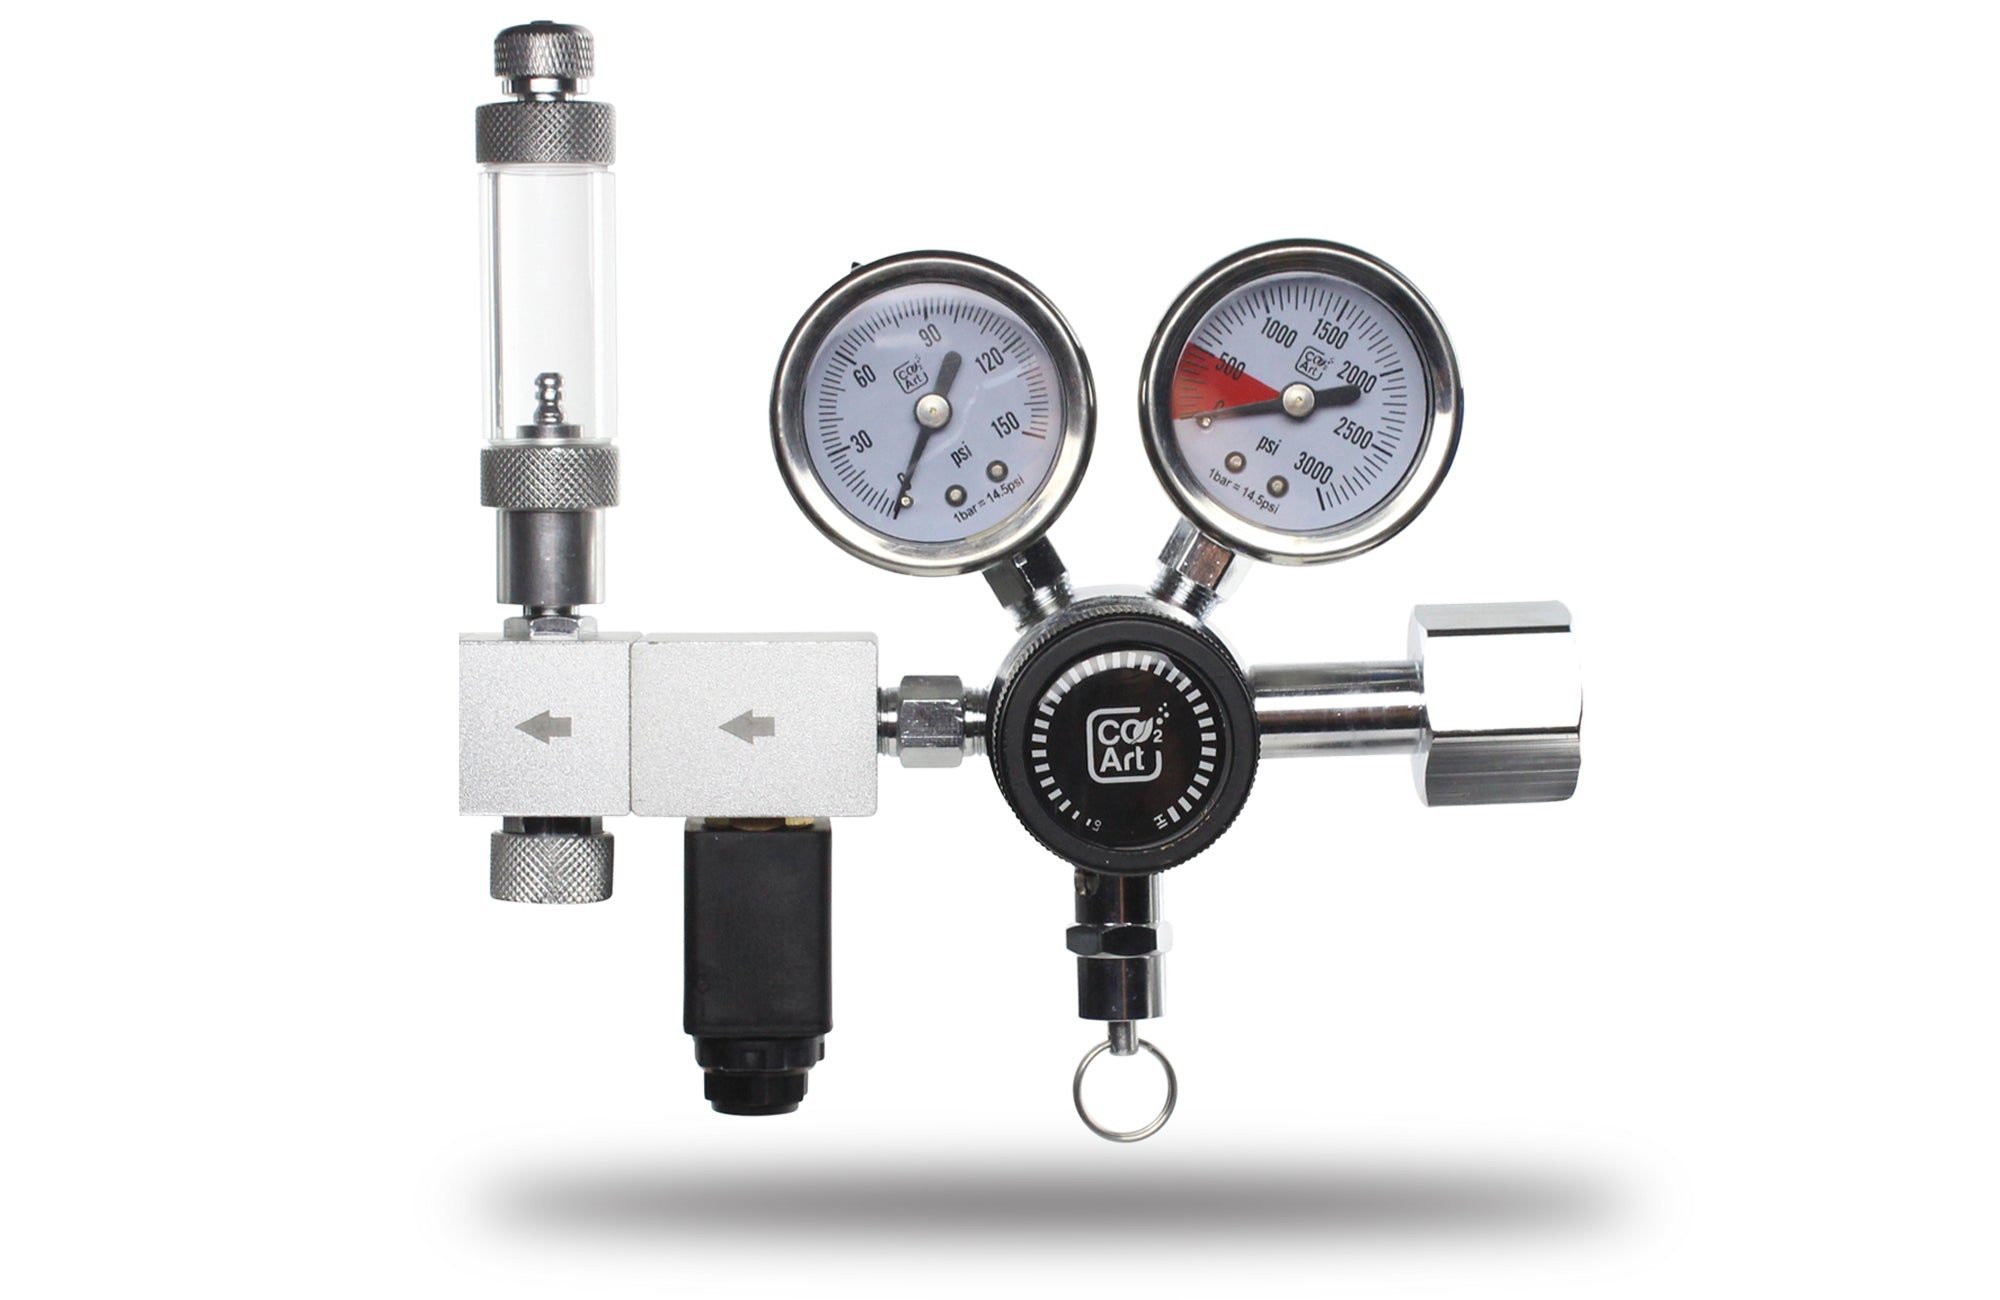 Adaptor Kit for German Pressure Regulator Euro Kit for Gas Bottle